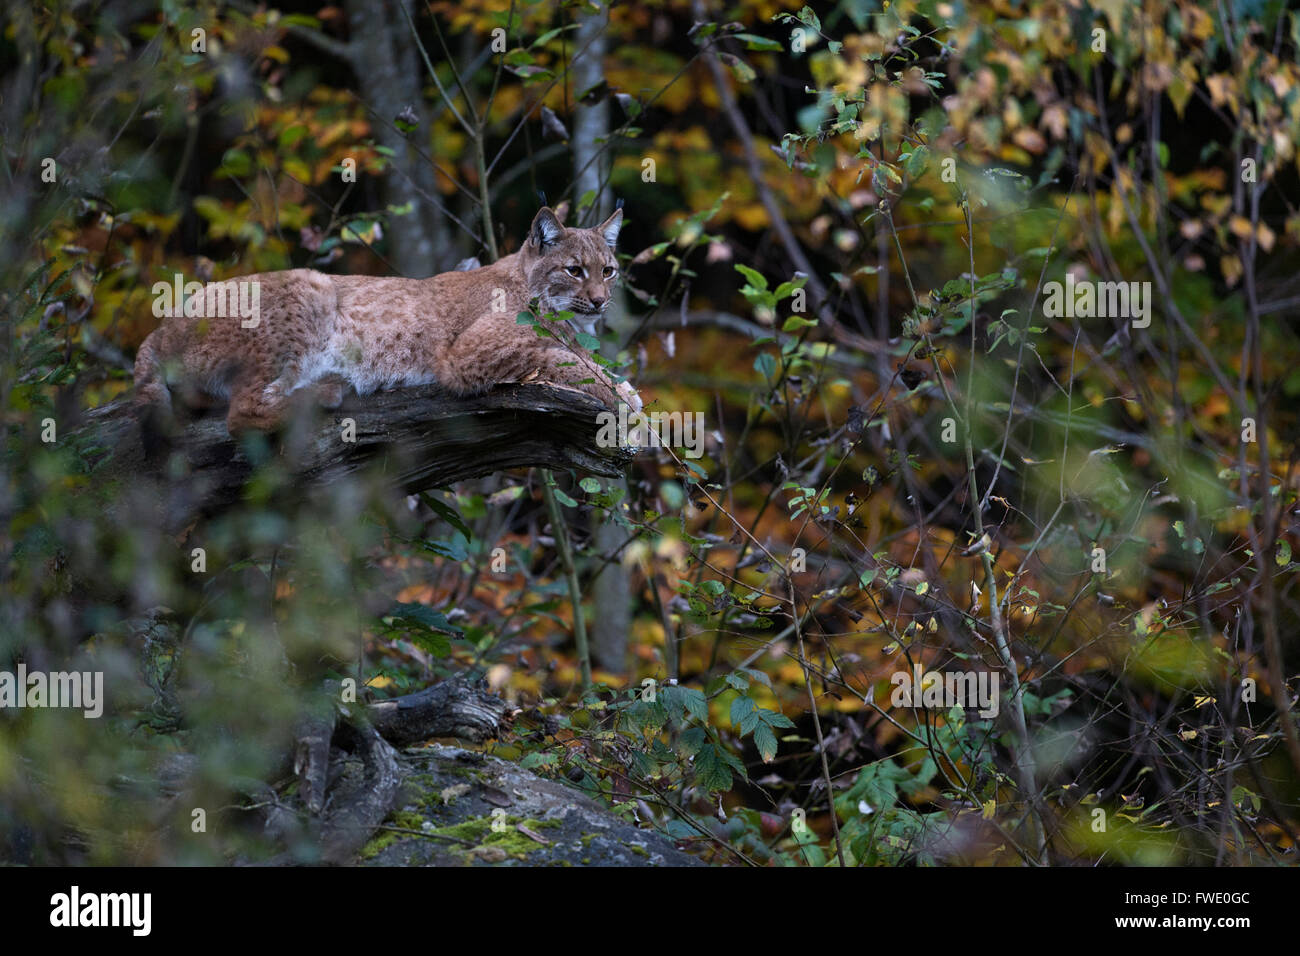 Lince euroasiático / Eurasischer Luchs ( Lynx lynx ), animal adulto, apoyado sobre un árbol caído en medio del otoño las hojas de color. Foto de stock